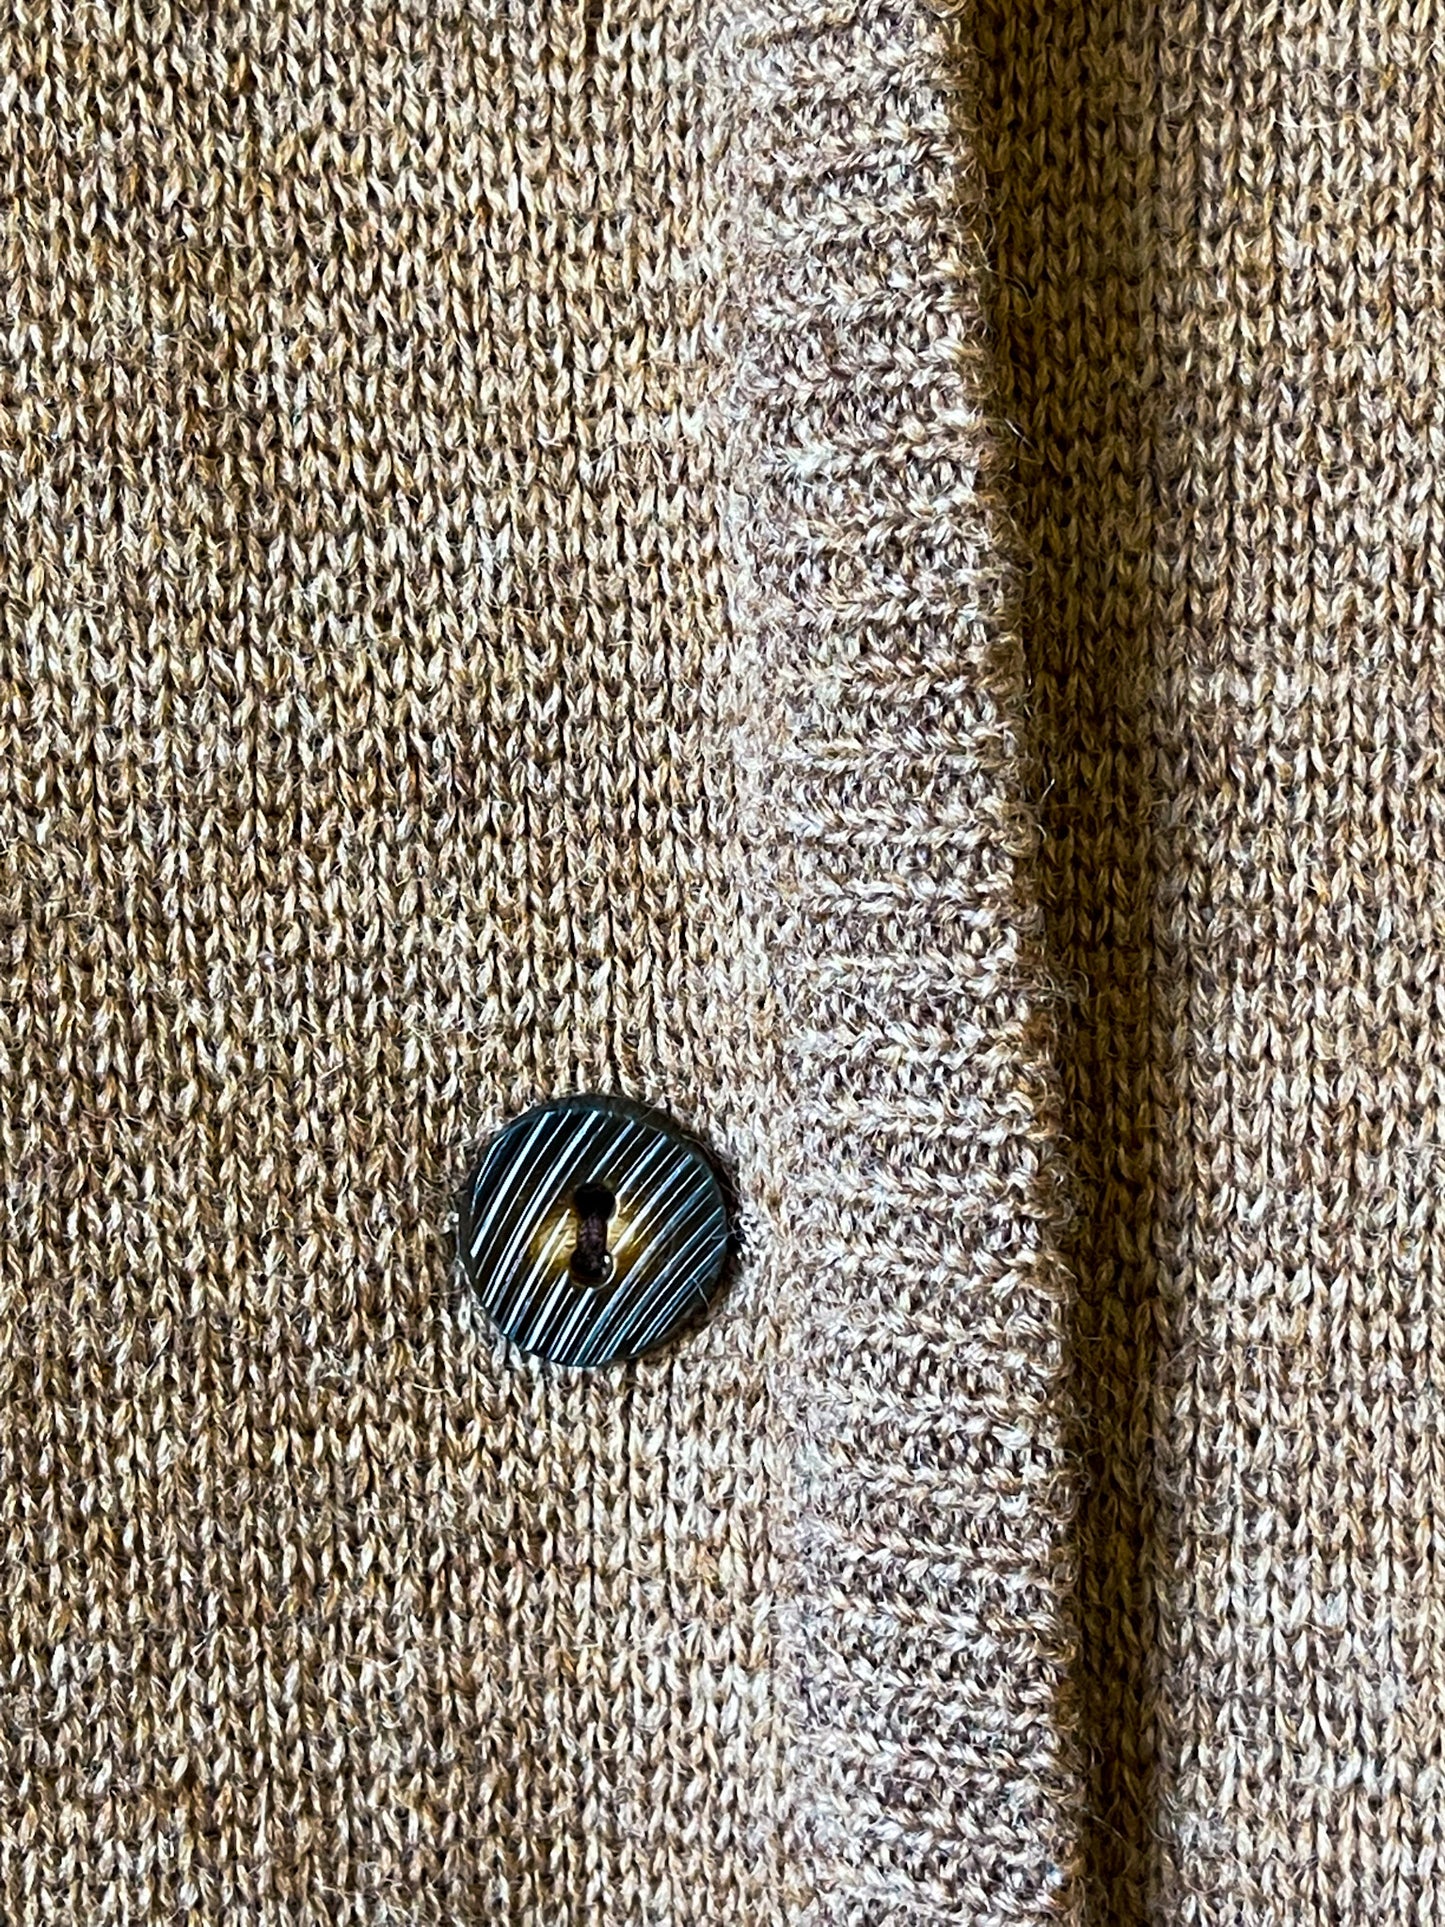 Vintage Wool Cardigan